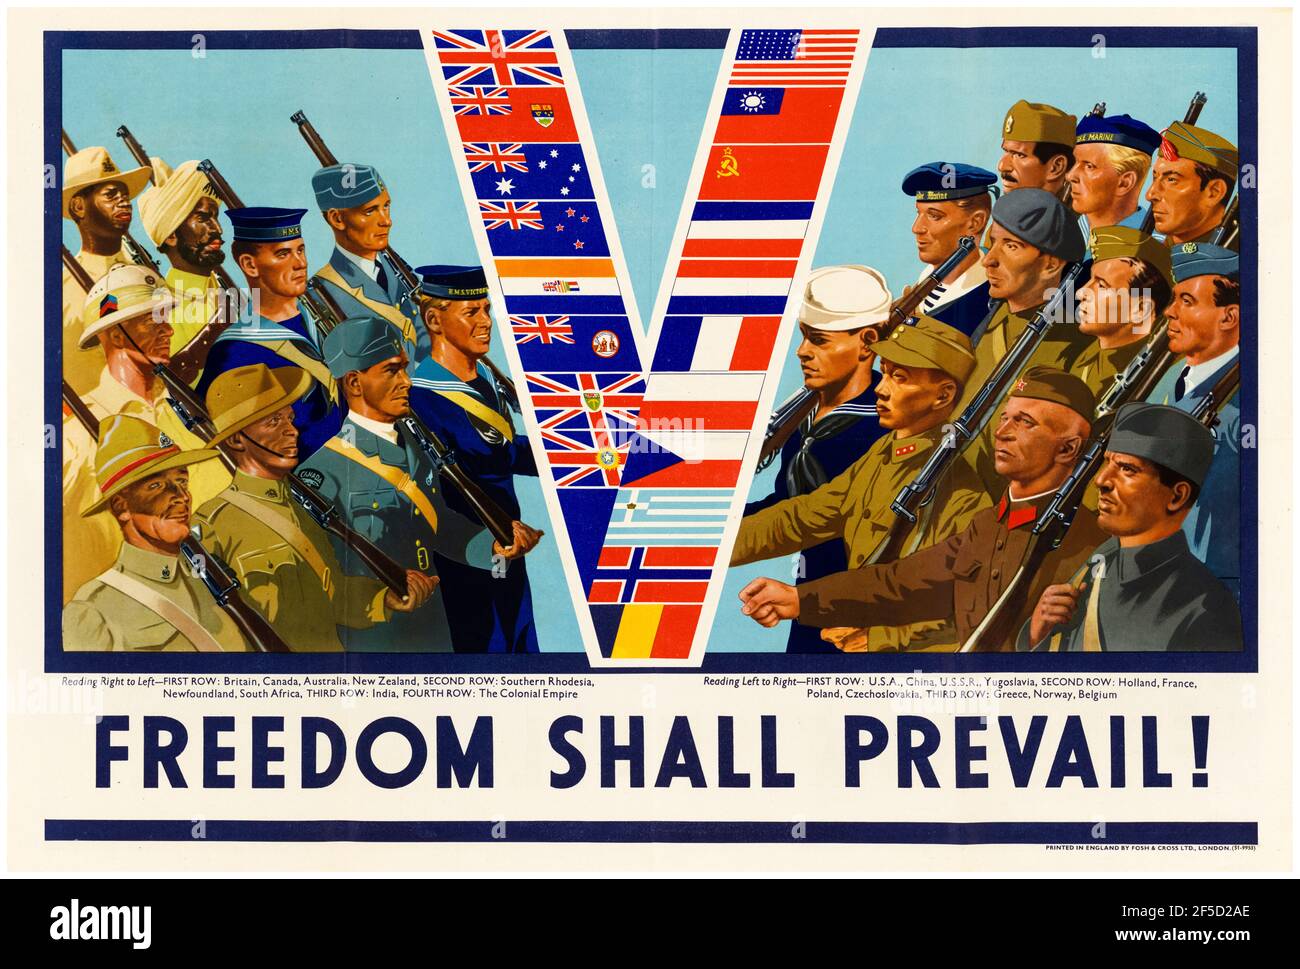 Freiheit soll siegen!,(alliierte Soldaten, Flieger und Marine, marschieren mit Fahnen), britisch, WW2 Motivationsposter, 1942-1945 Stockfoto